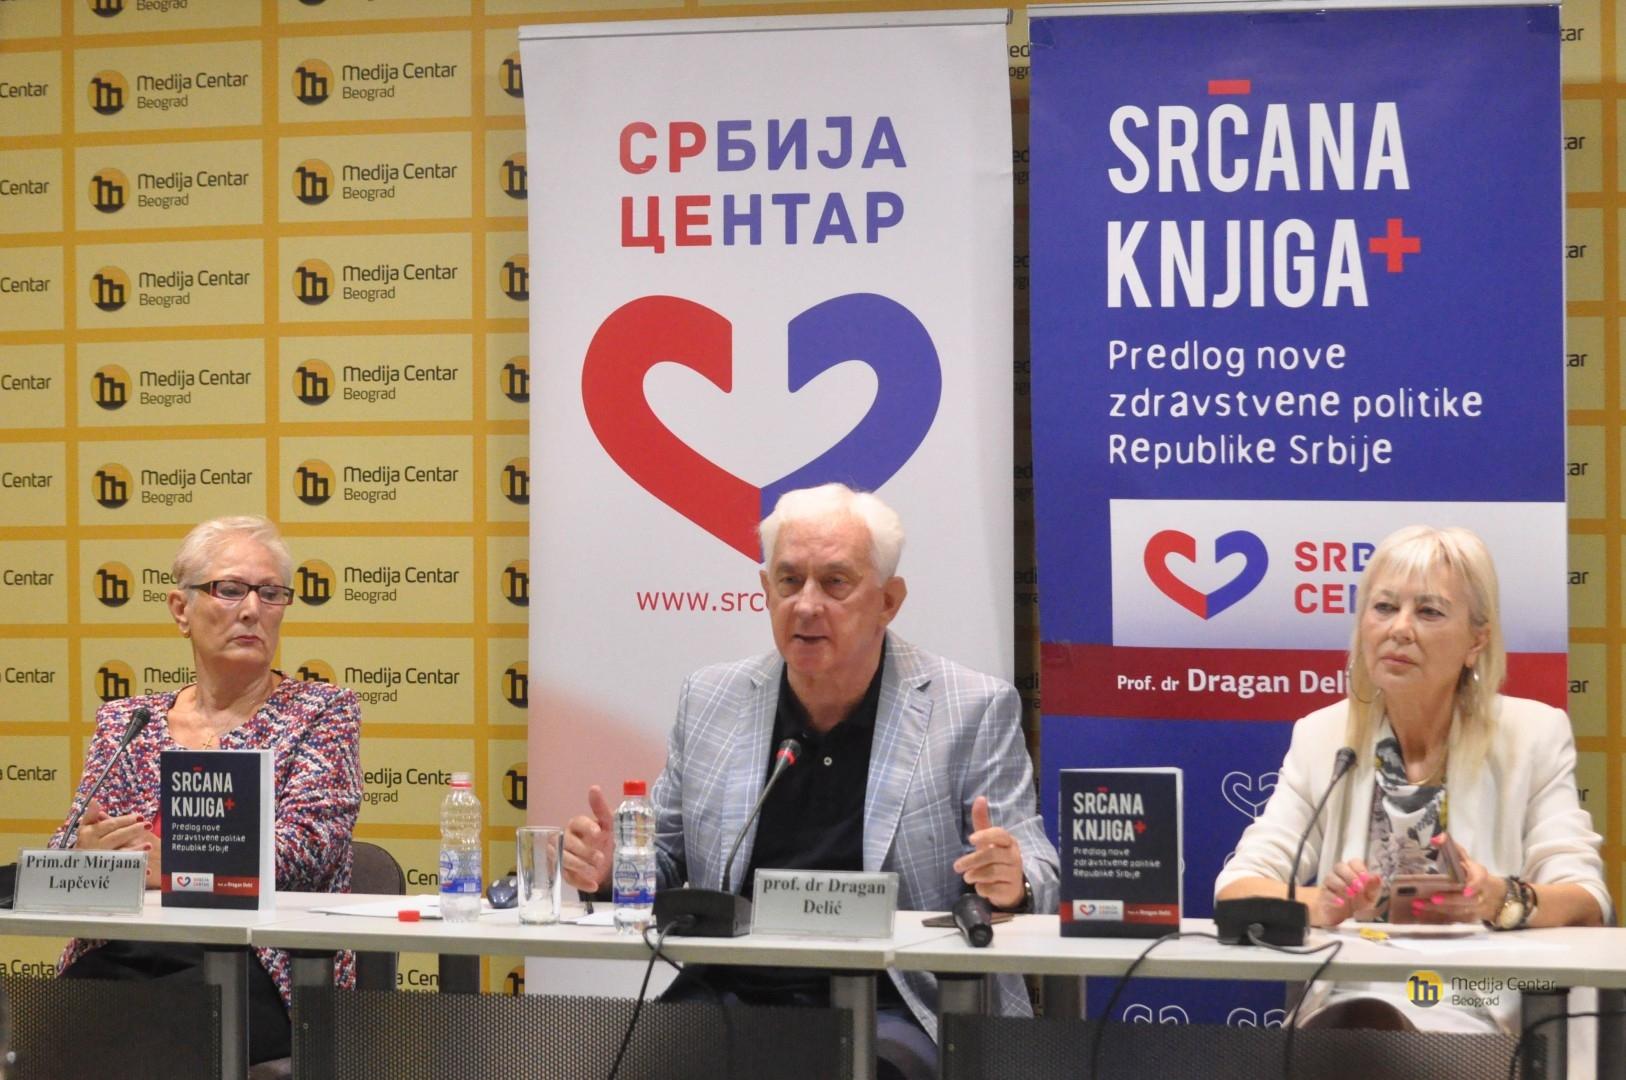 Resorni odbor za zdravstvo stranke Srbija Centar pripremio predlog nove zdravstvene politike